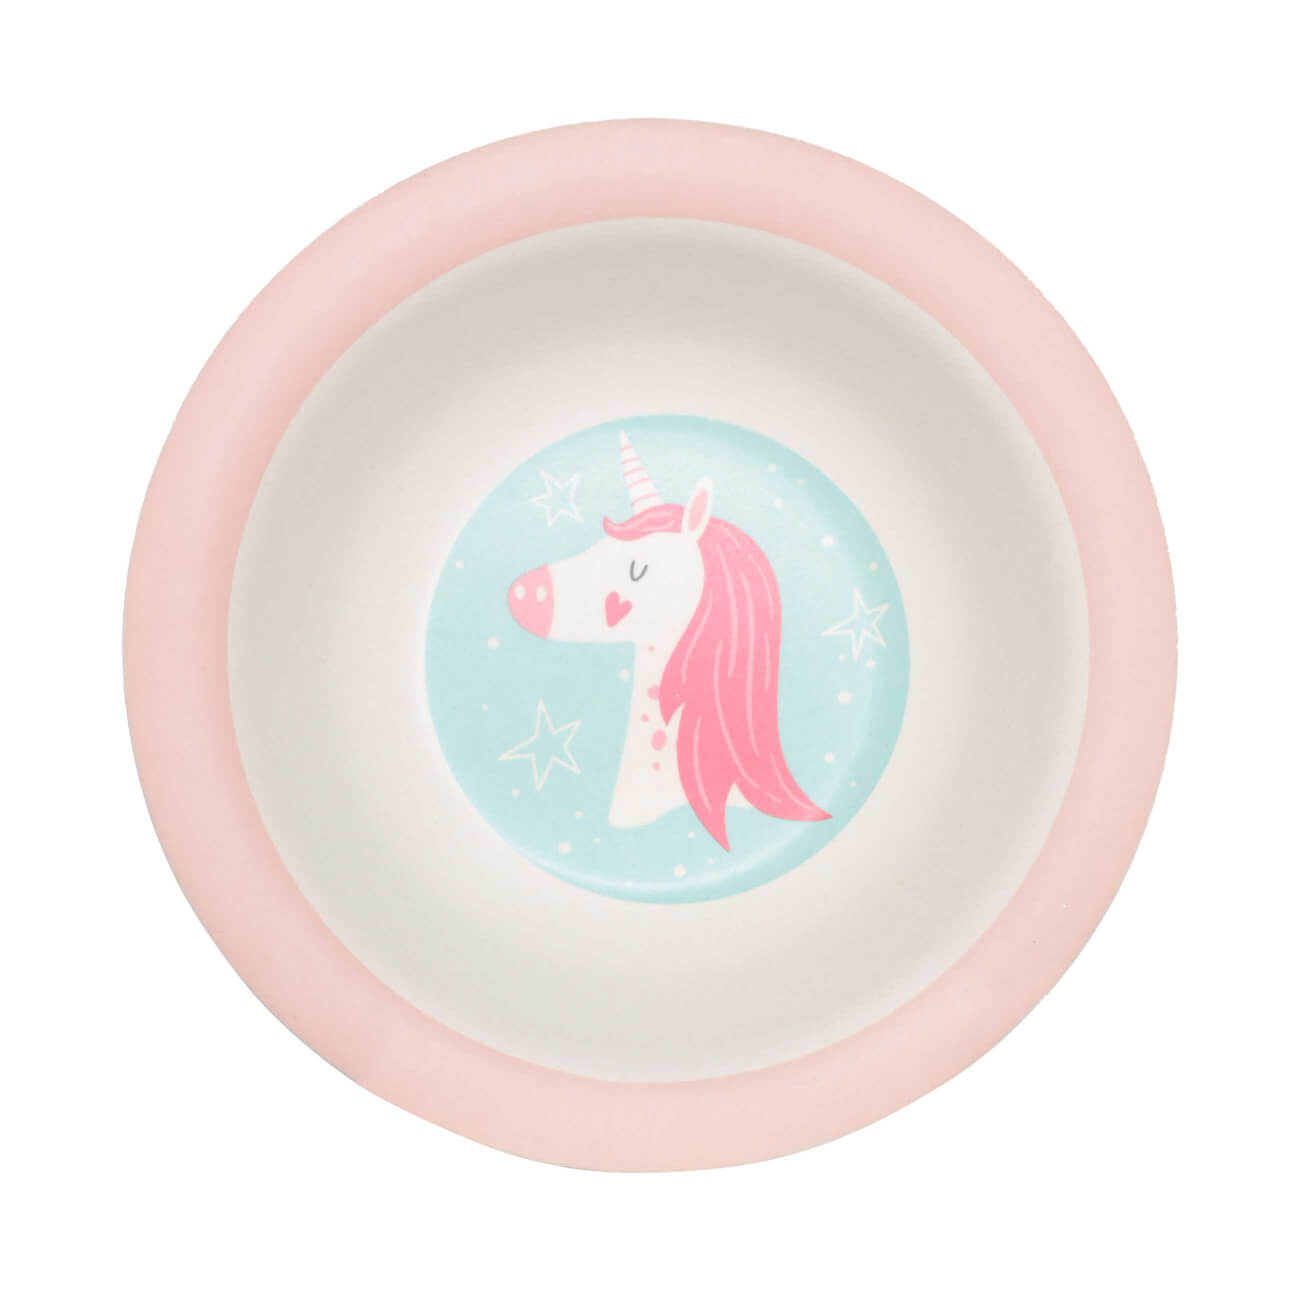 Тарелка суповая, детская, 15 см, бамбук, розово-мятная, Единорог и звезды, Unicorn тарелка детская